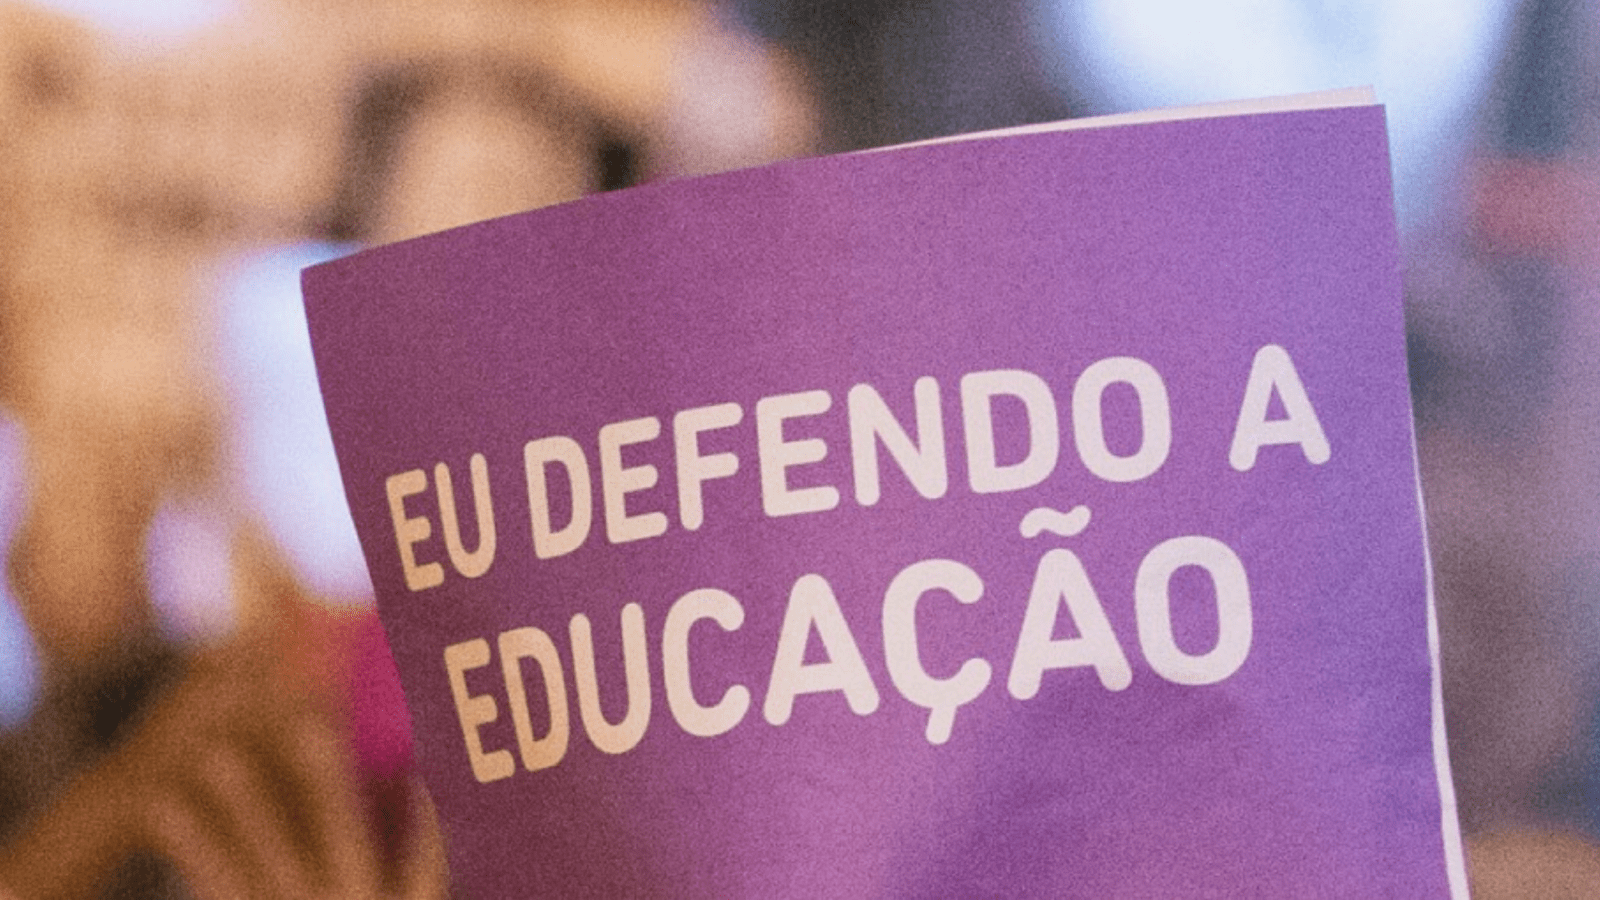 cartaz roxo com as palavras "eu defendo a educação"em branco